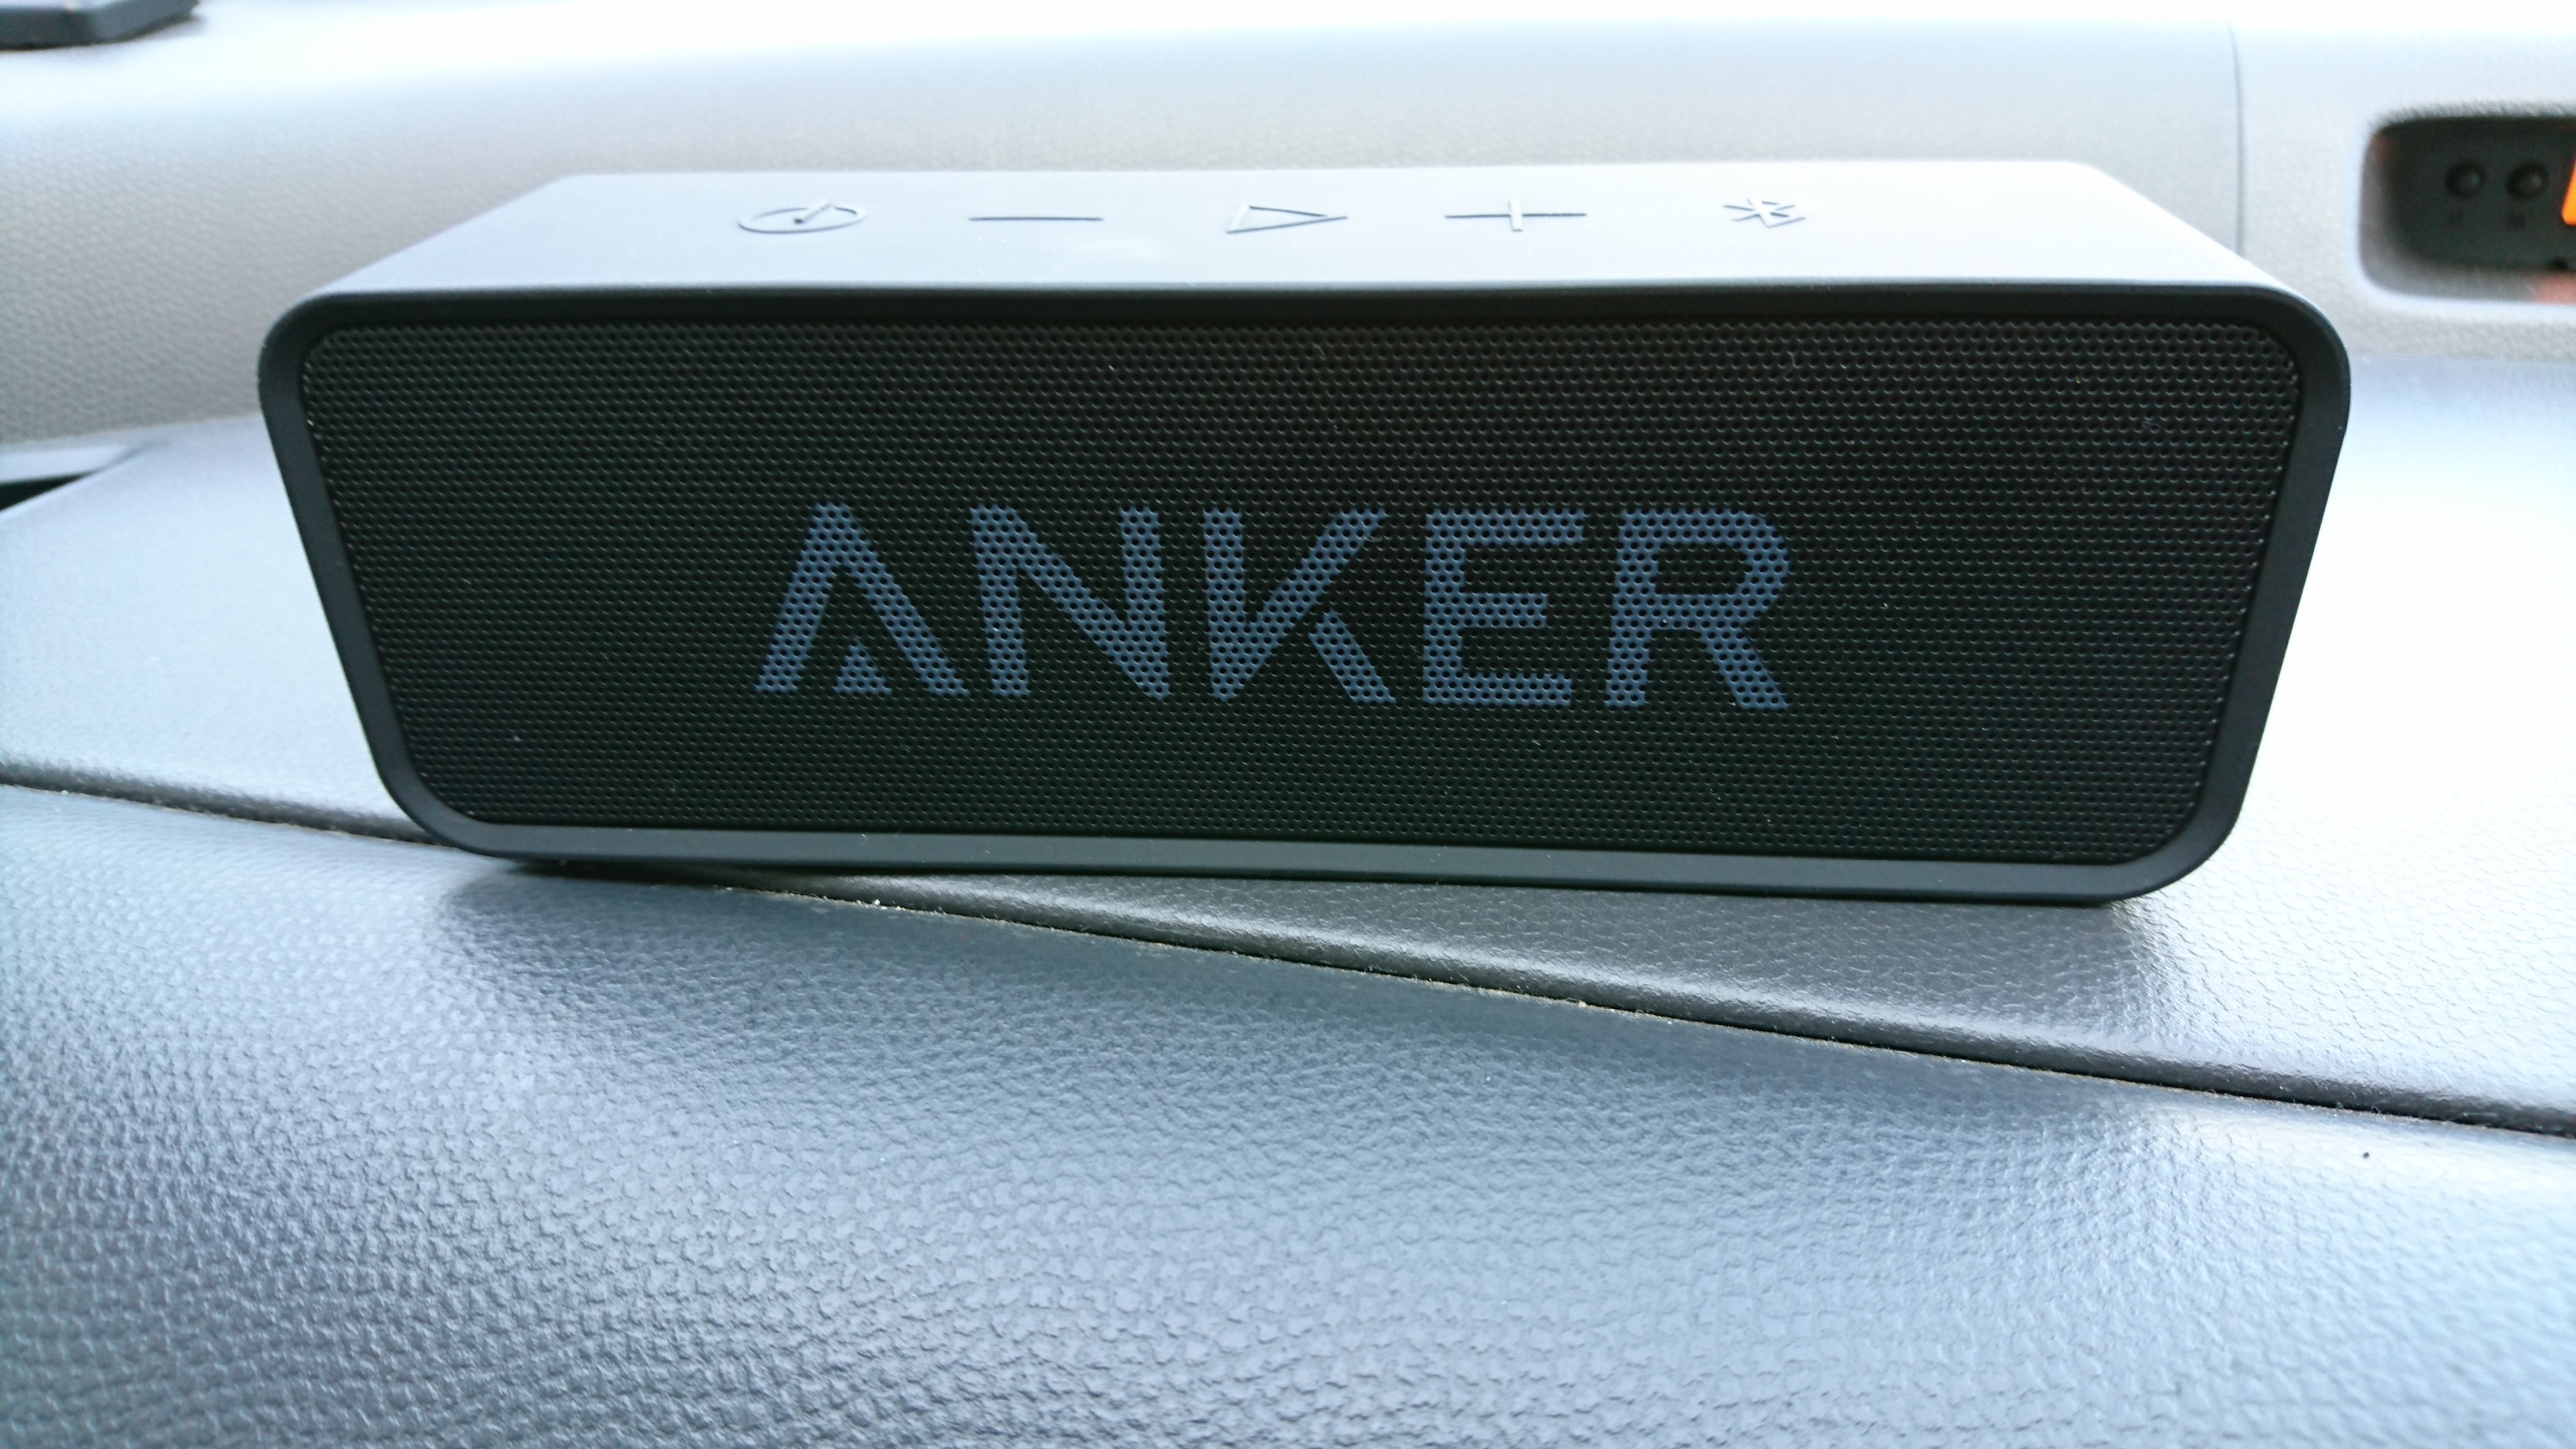 車に置くスピーカーを買ってみた Anker Soundcore 車載用スピーカー 平凡な人生を変えていくブログ